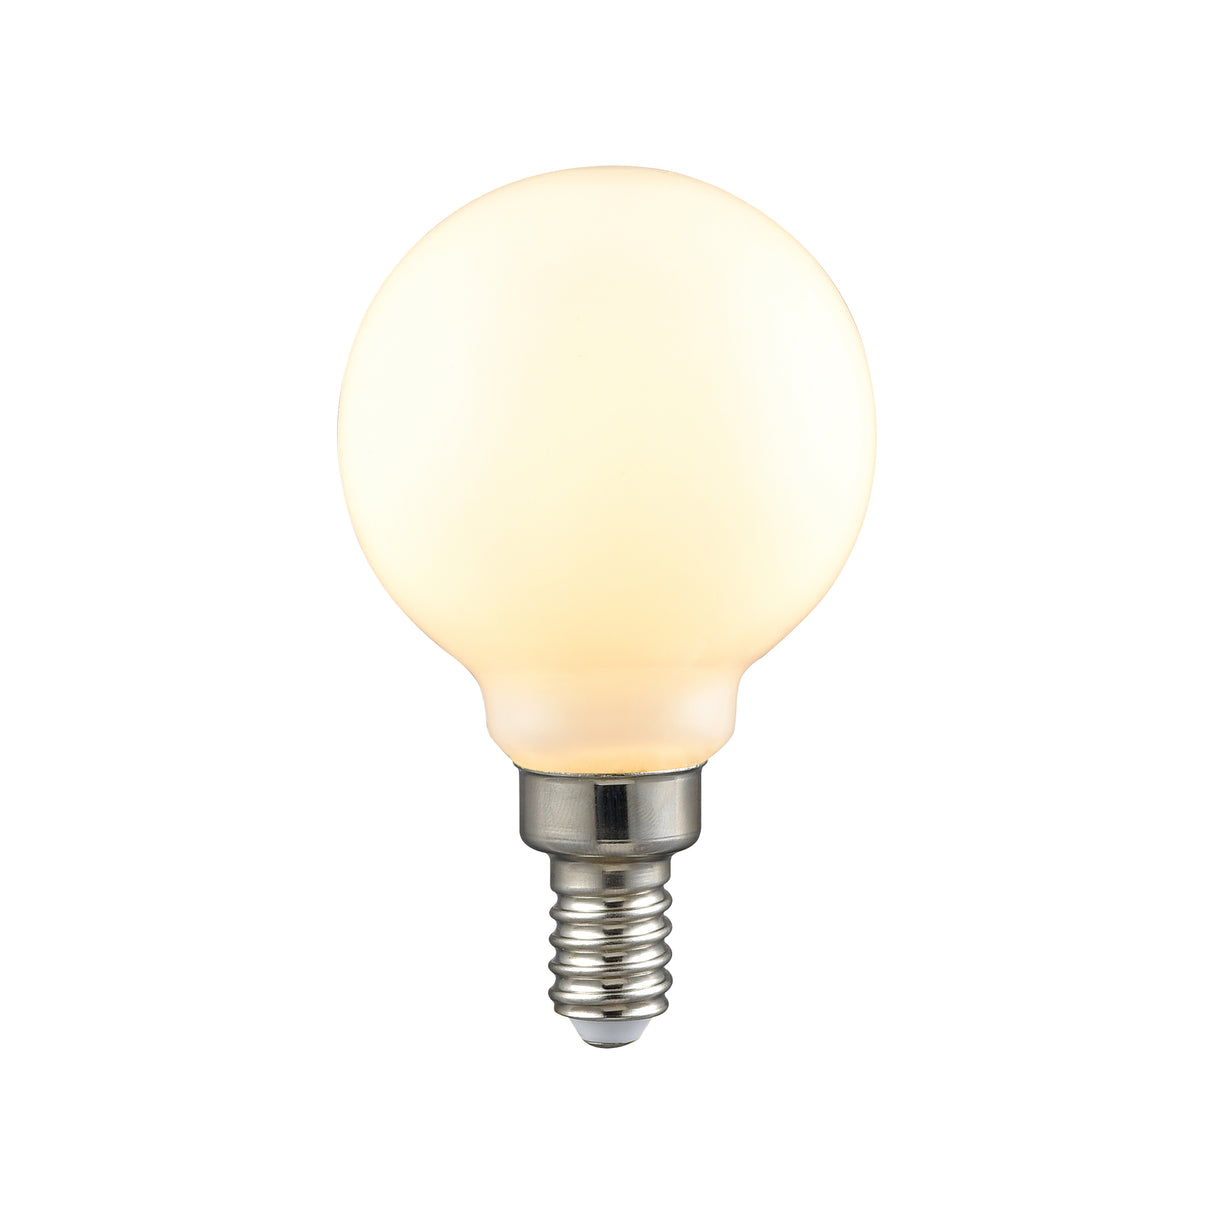 Elk 1115 LED Candelabra Bulb - Shape G16.5, Base E12, 2700K - Frosted